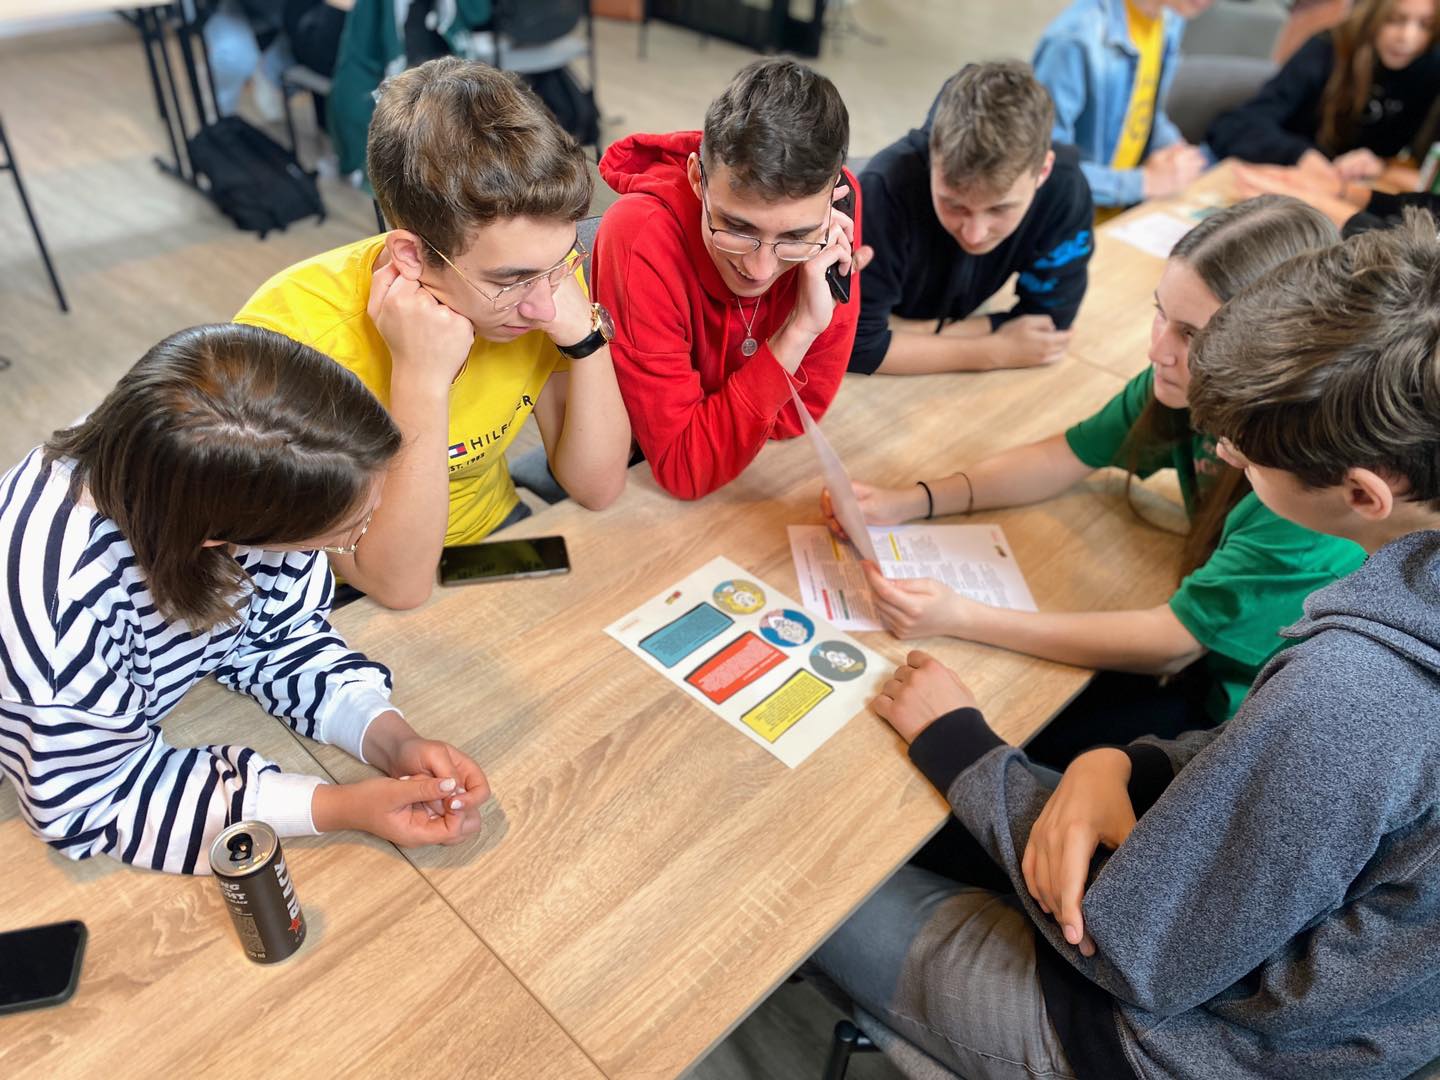 Na zdjęciu uczniowie podczas warsztatów pt. „Fakescape. Ucieknij fake newsom!” Uczniowie siedzą przy stole i rozwiązują projektowe zadania na kartach pracy.